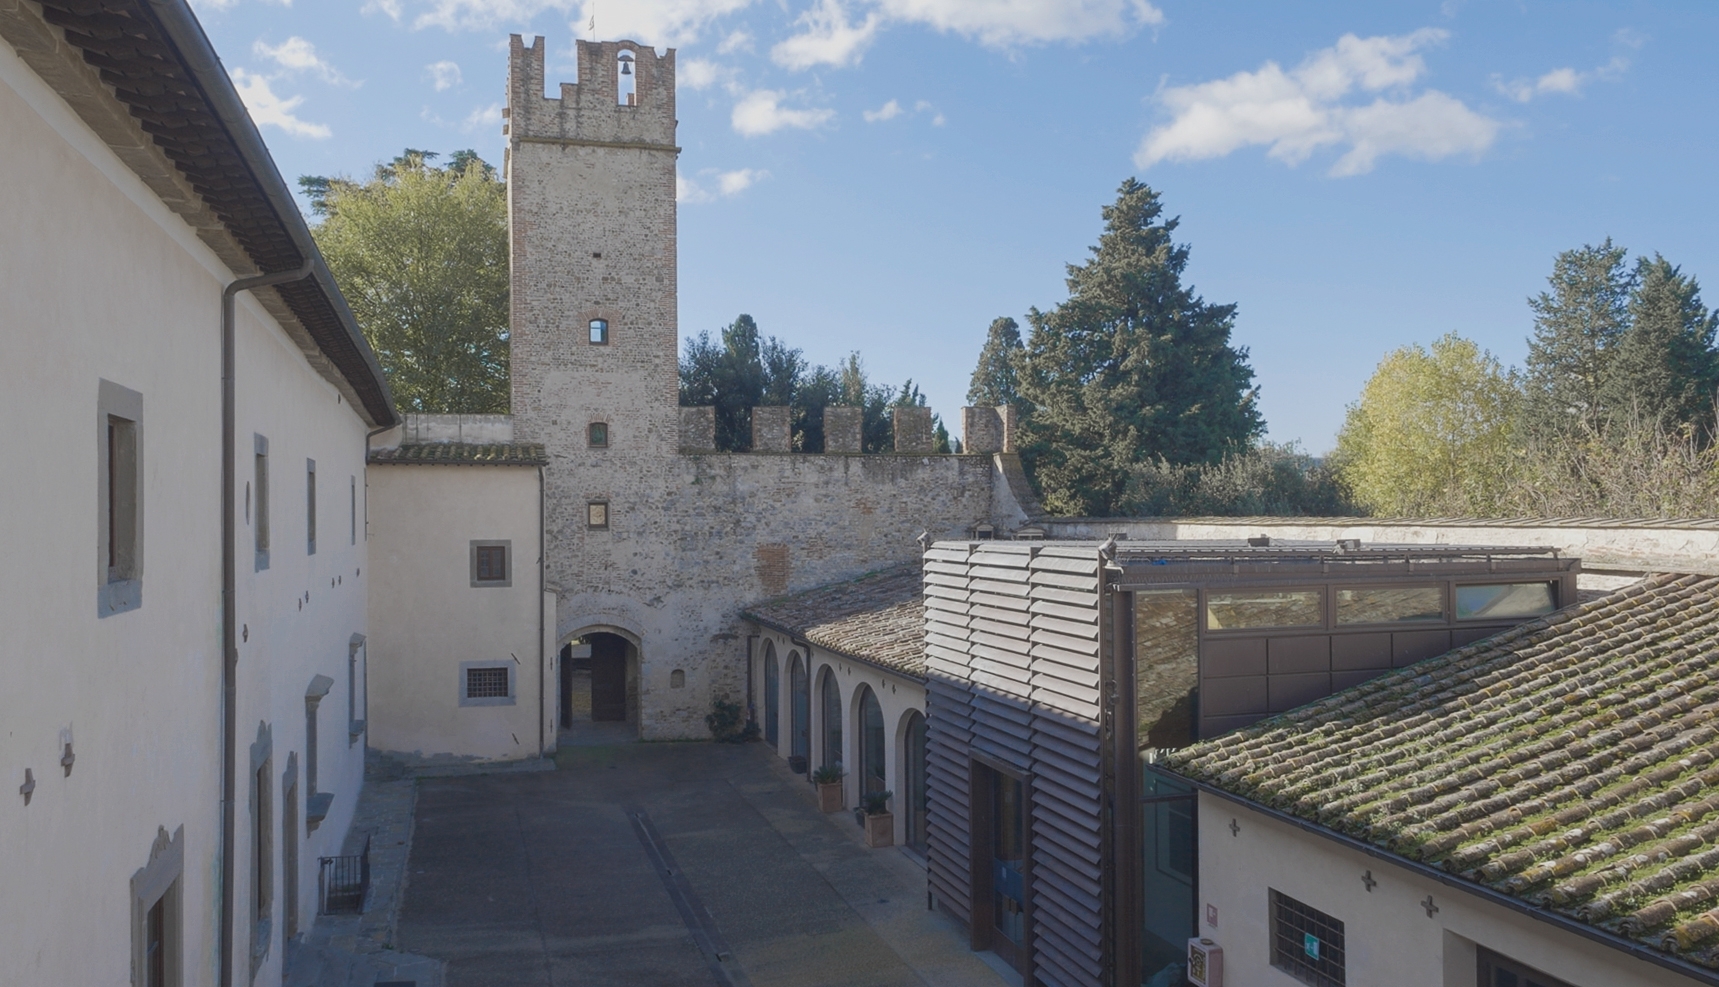 Castello dell'Acciaiolo